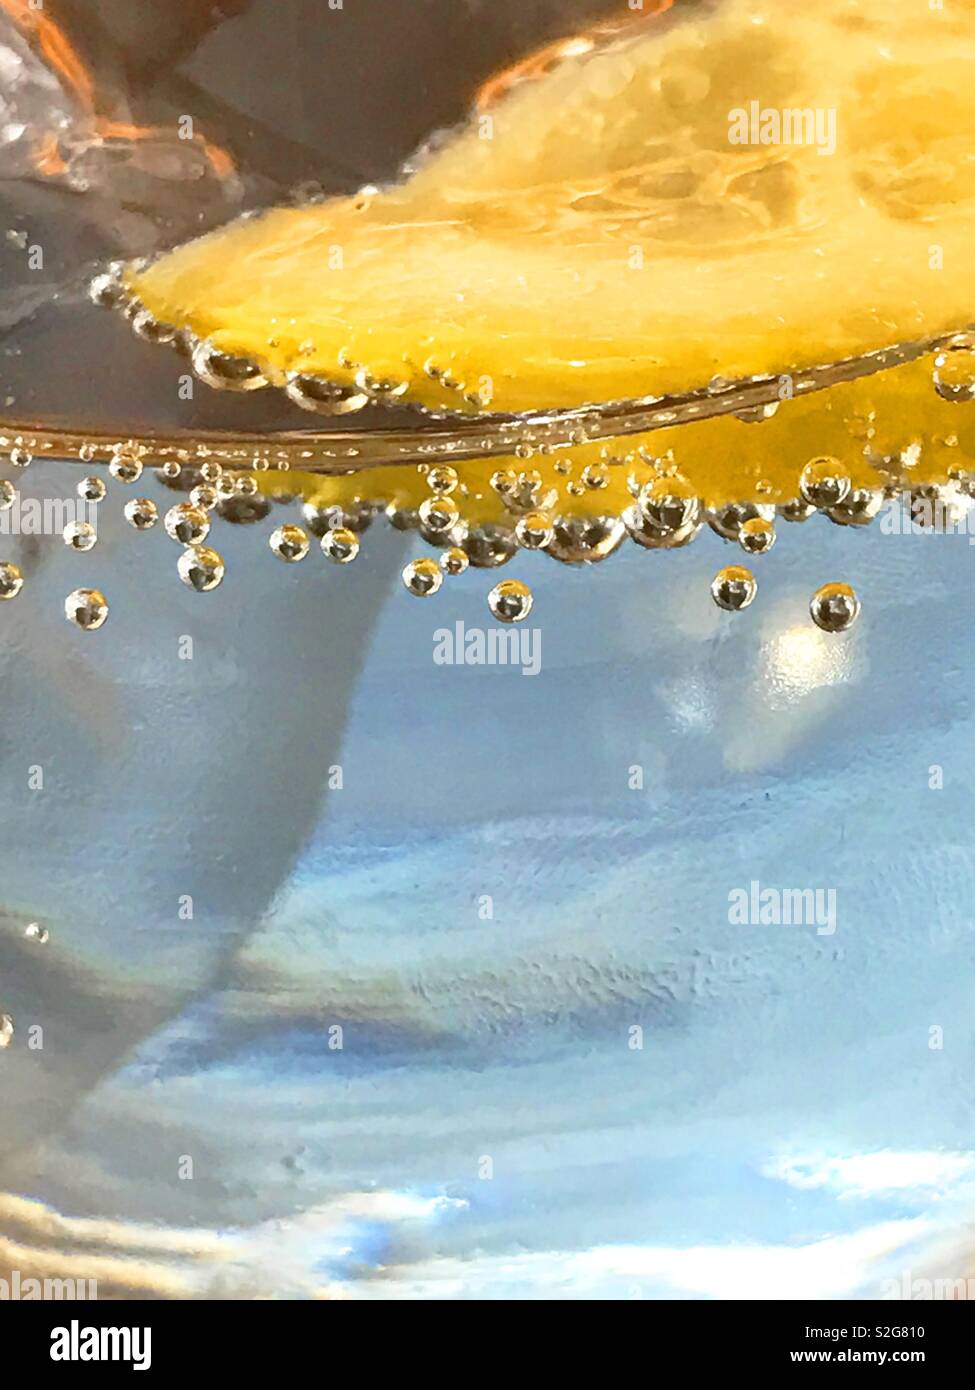 Fettina di limone in acqua frizzante. Chiudere la vista. Foto Stock